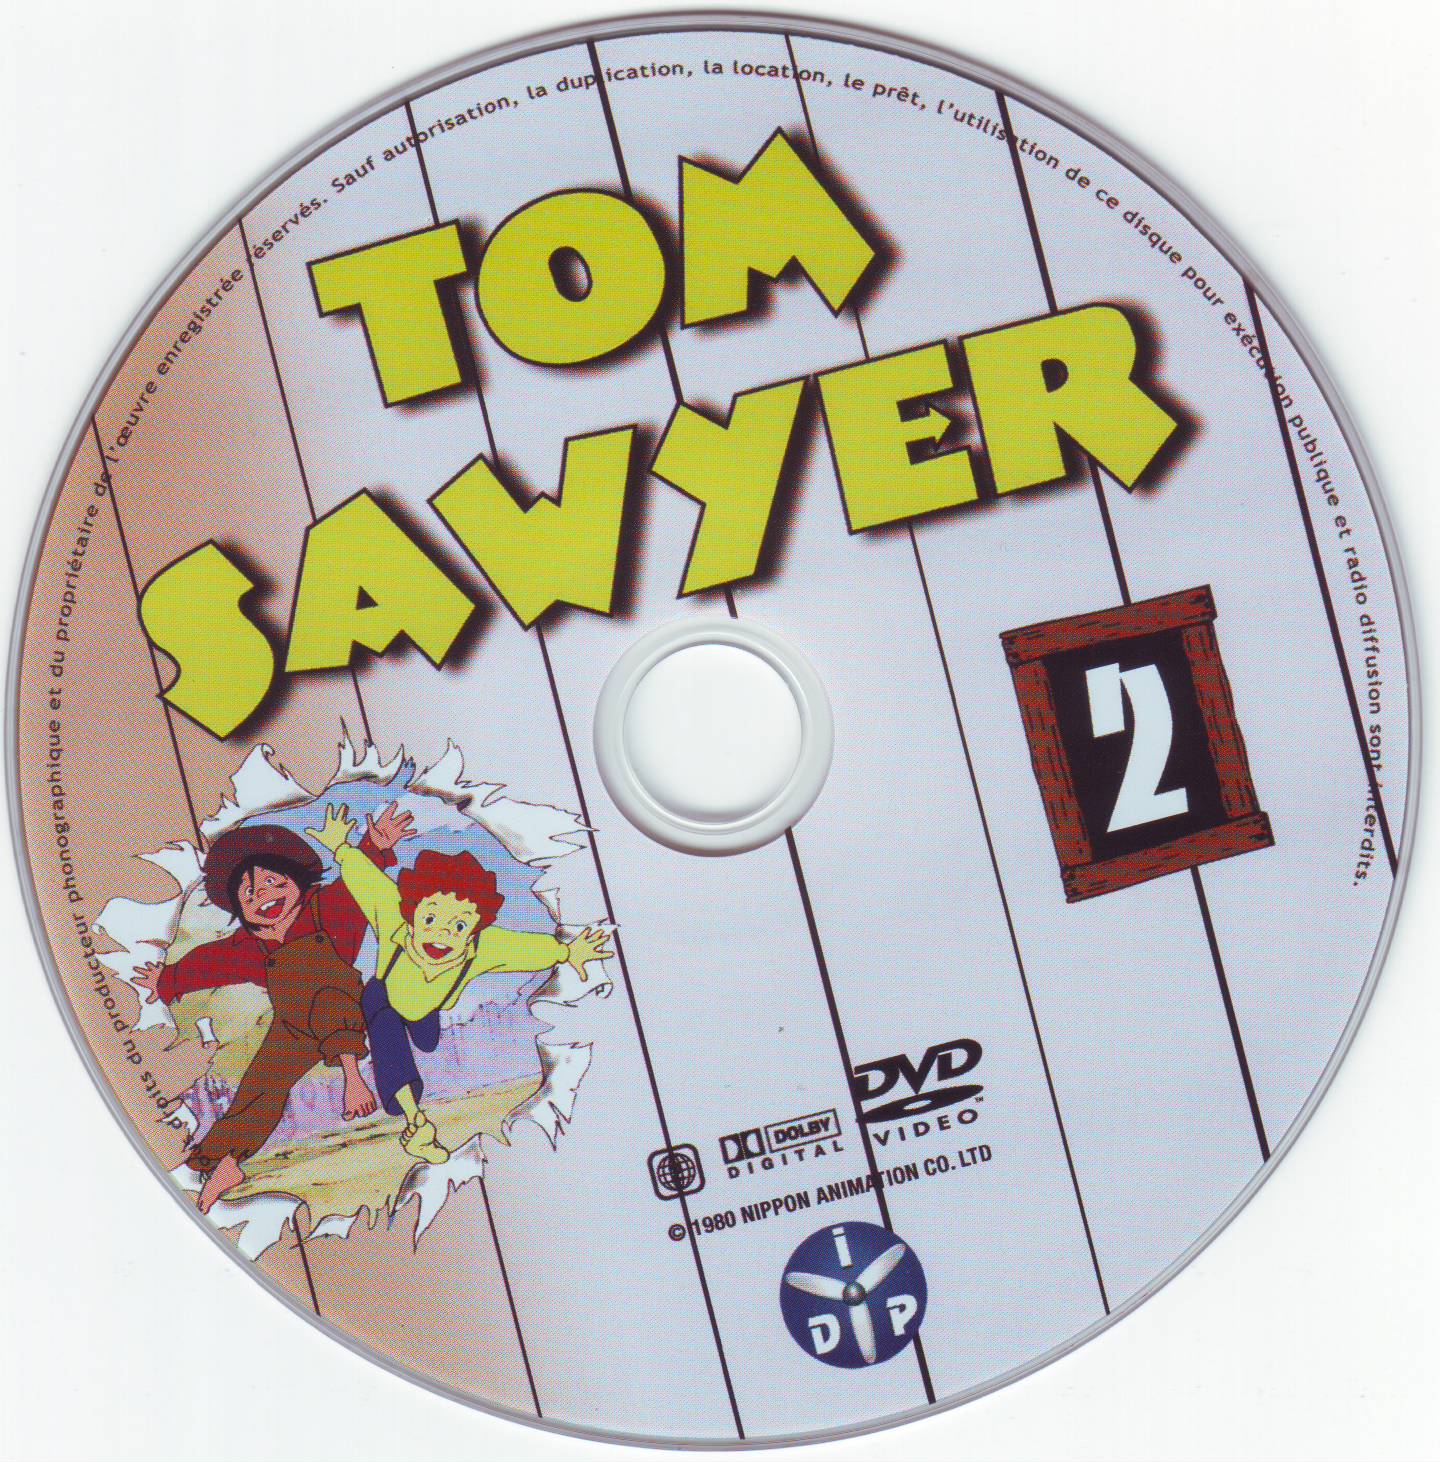 Tom Sawyer DVD 2